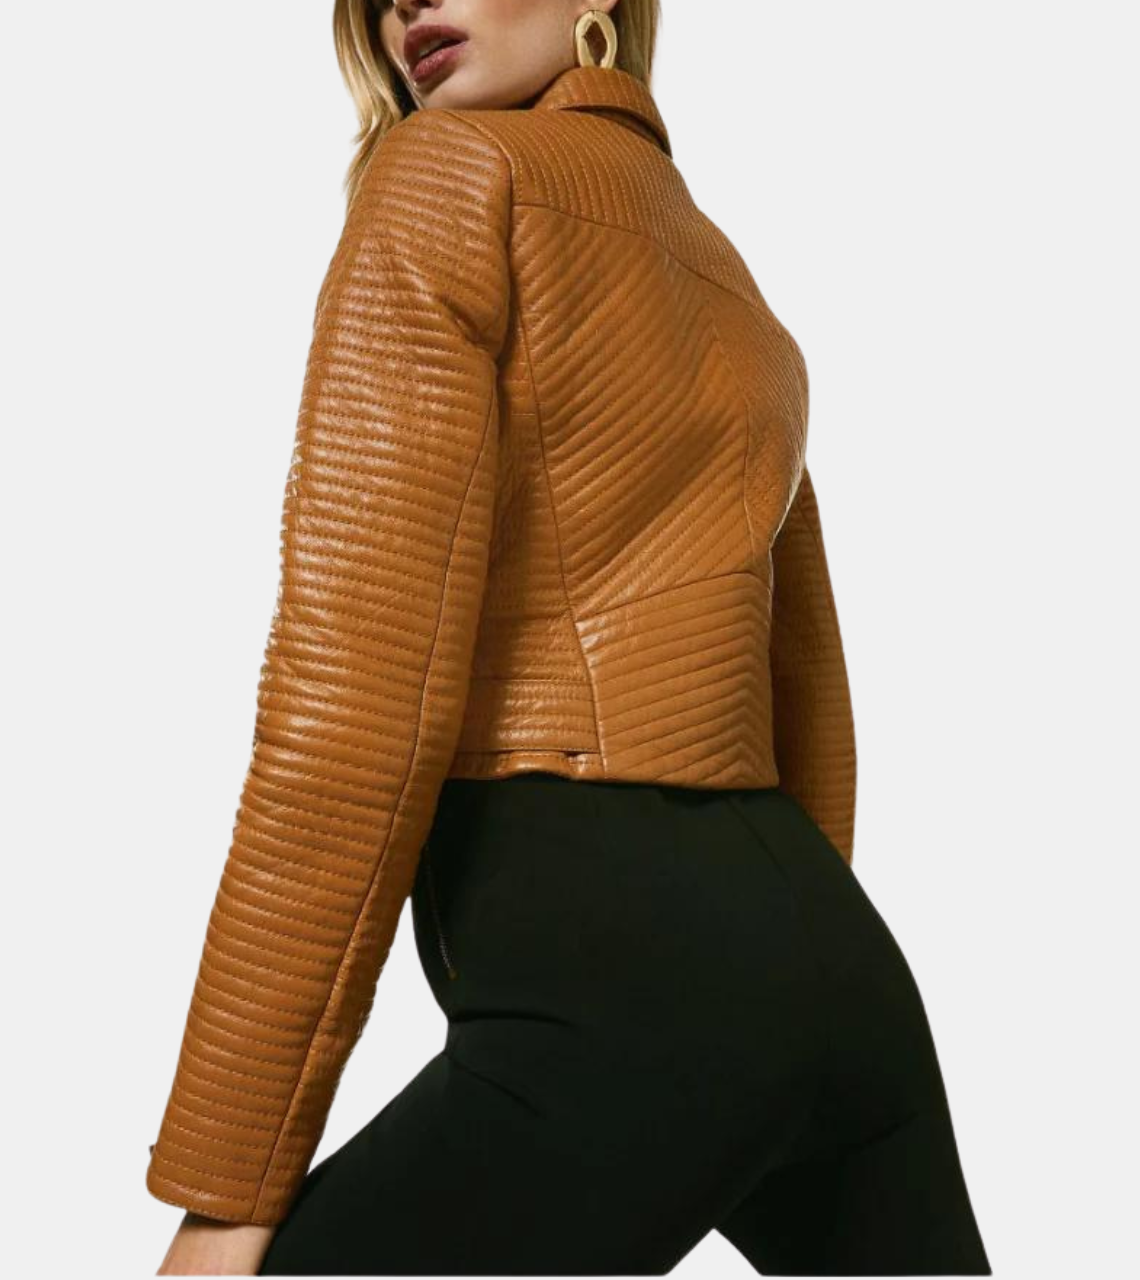 Tan Brown Women’s Biker Leather Jacket Back